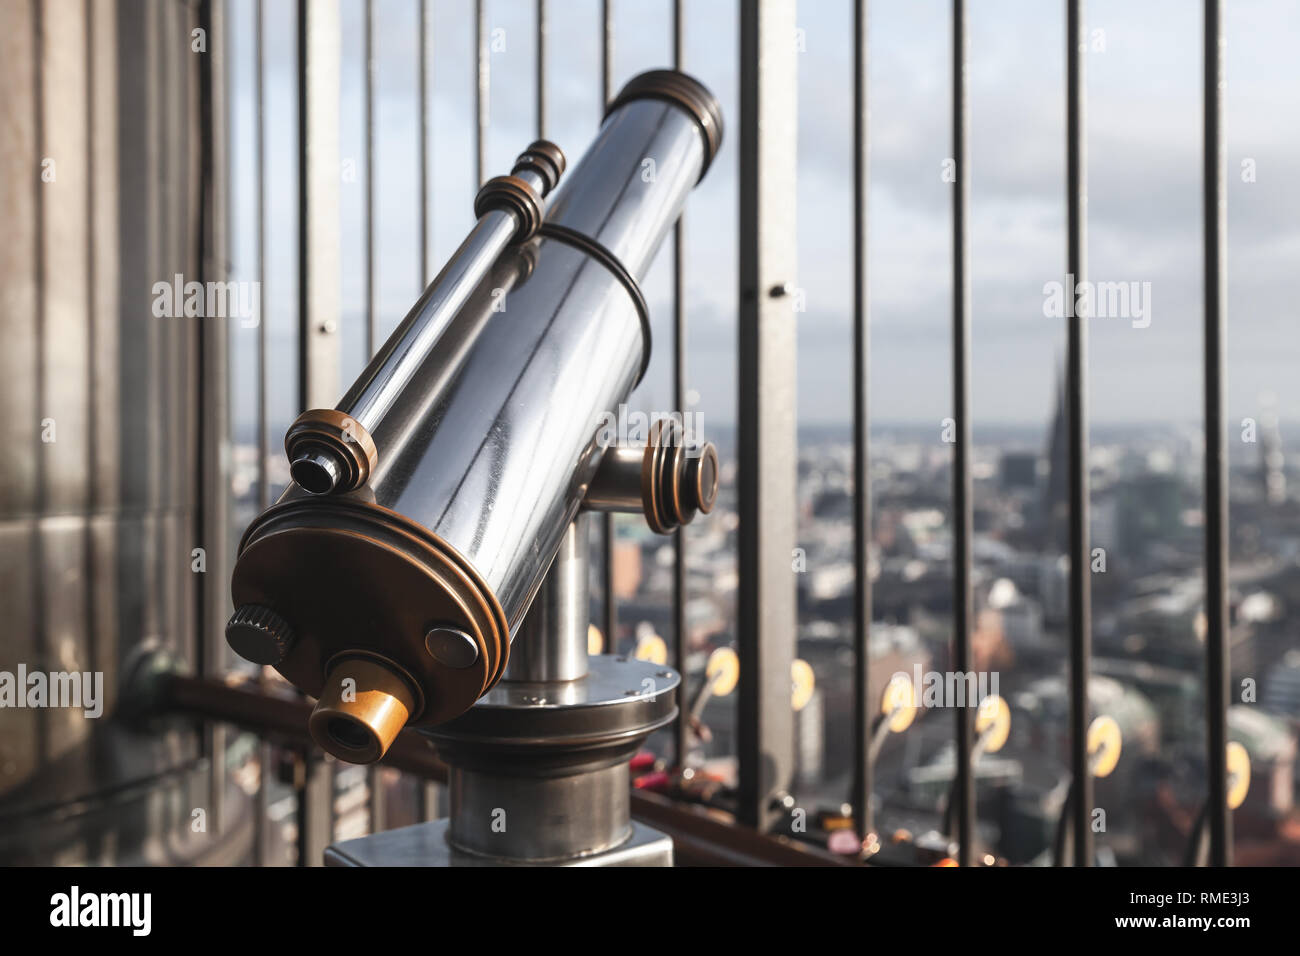 Touristische vintage bezahlt Teleskop steht auf dem Standpunkt von Hamburg, Deutschland. Nahaufnahme mit weichen selektiven Fokus Stockfoto